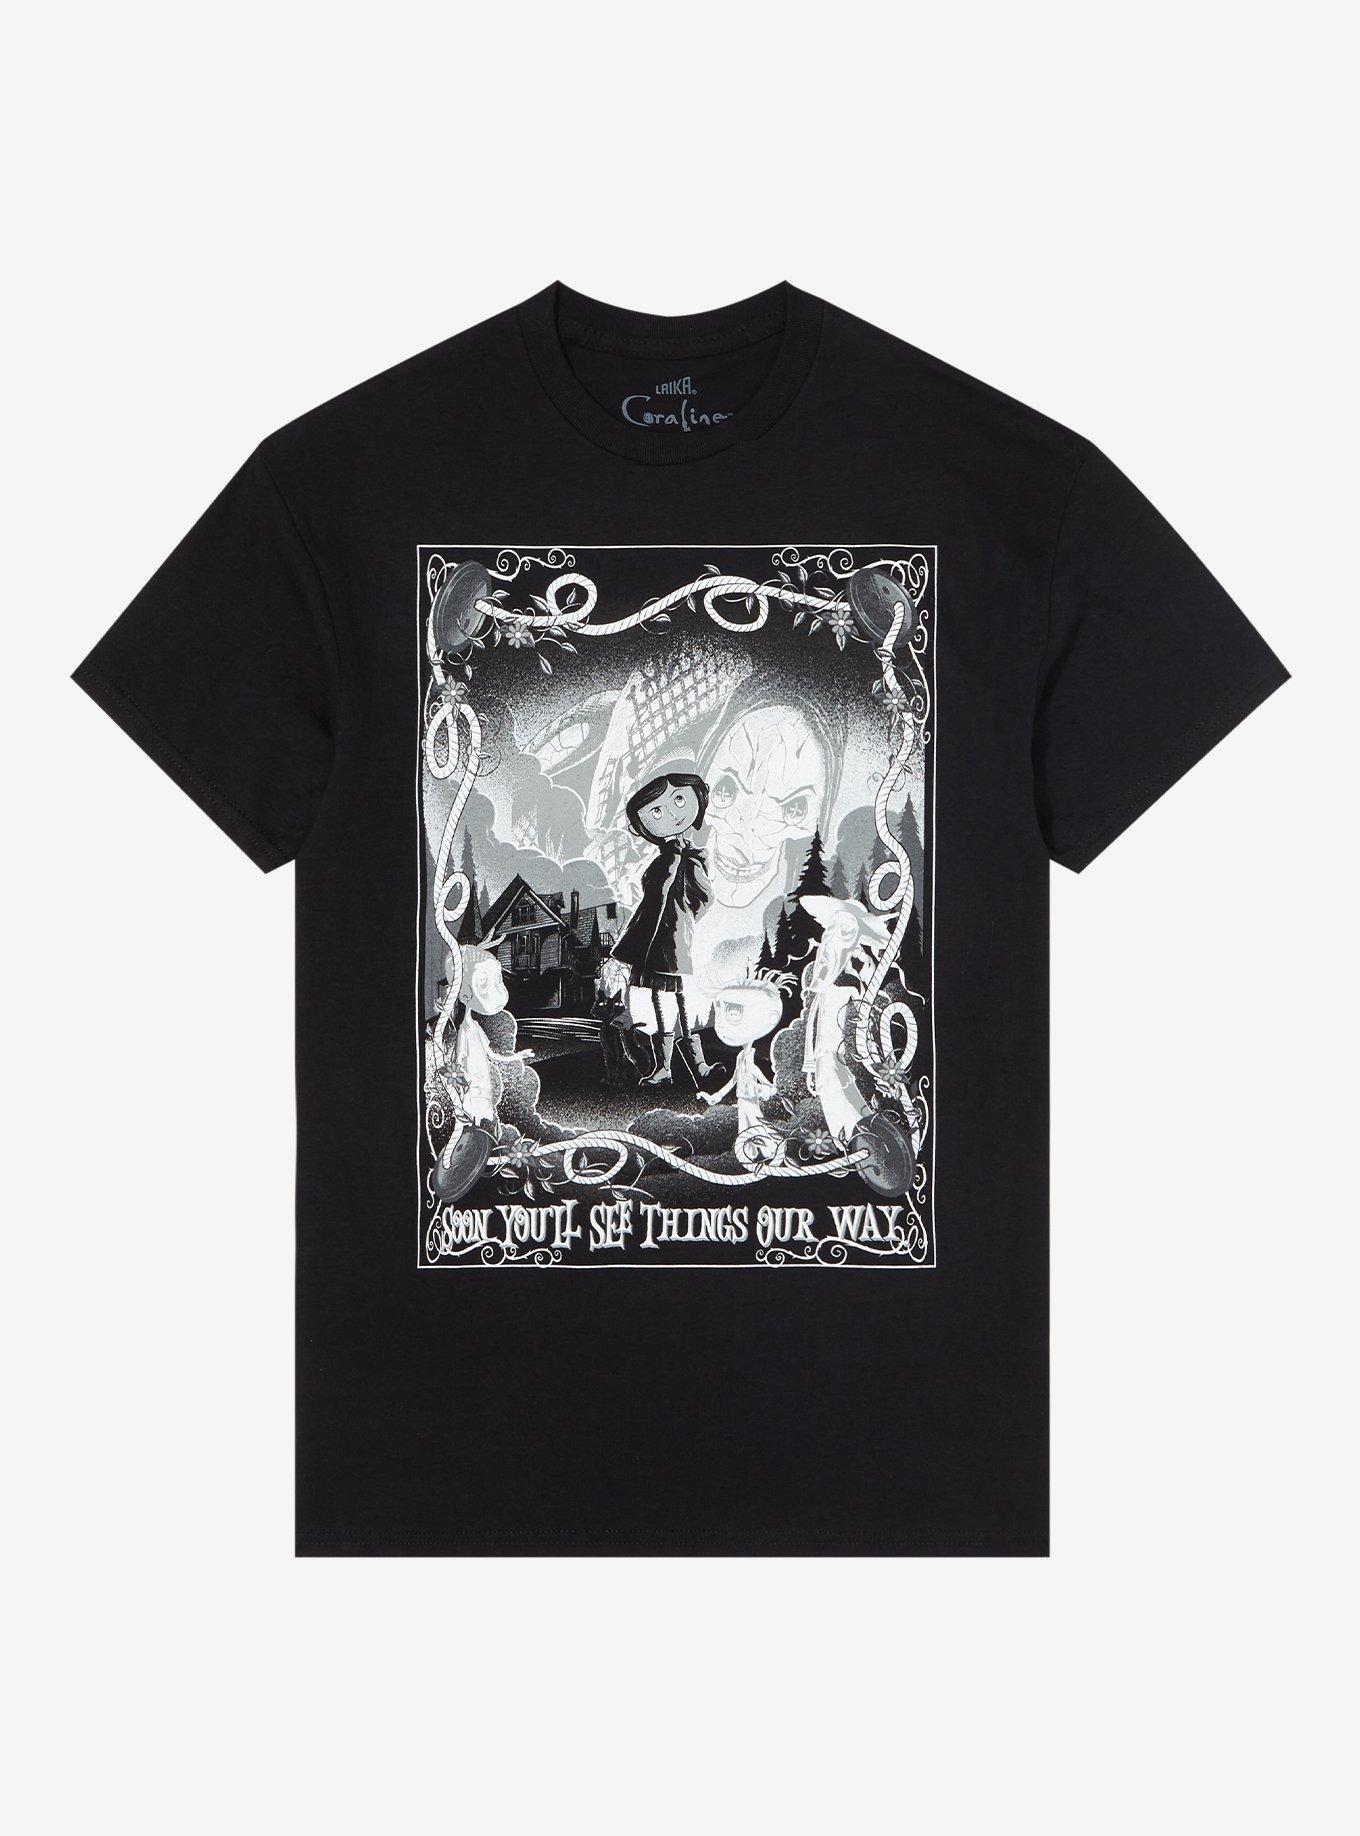 Coraline Black & White Portrait T-Shirt, BLACK, hi-res